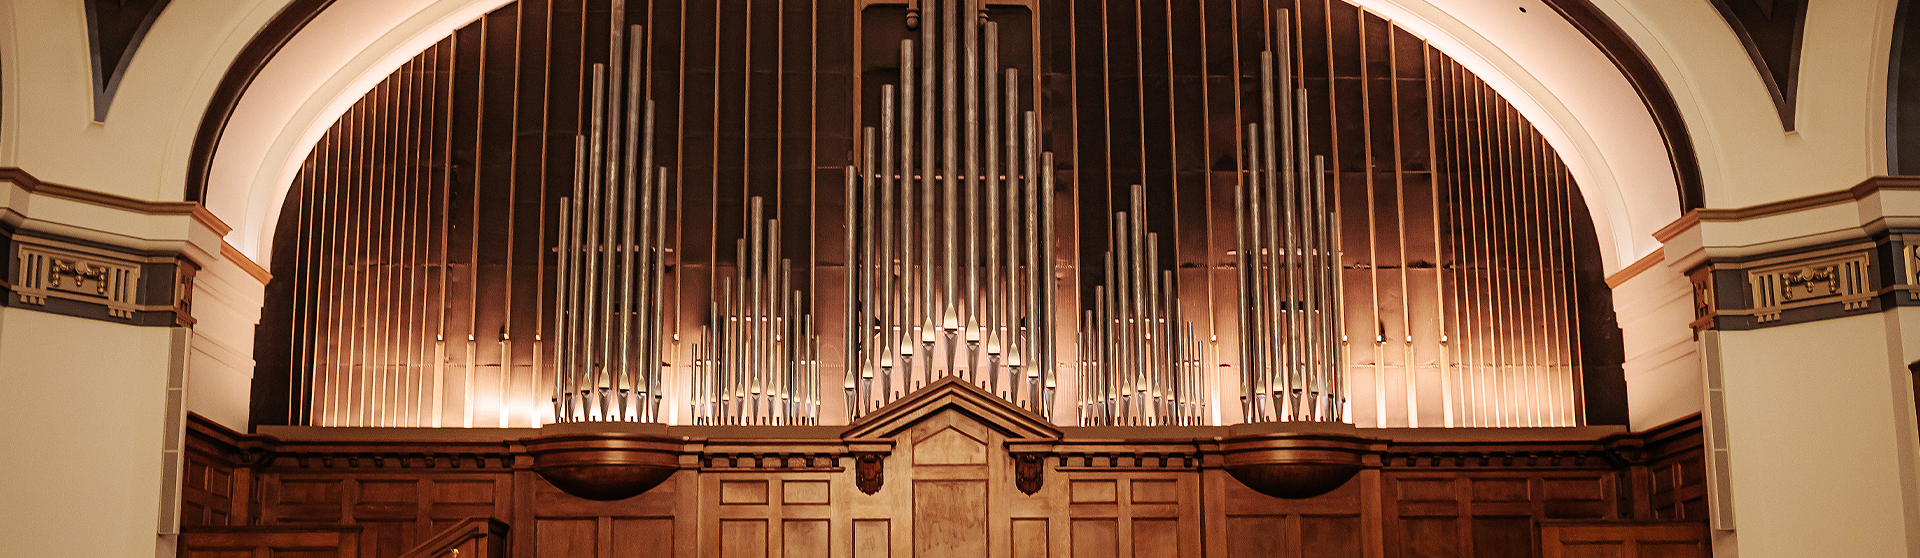 organ in the venue